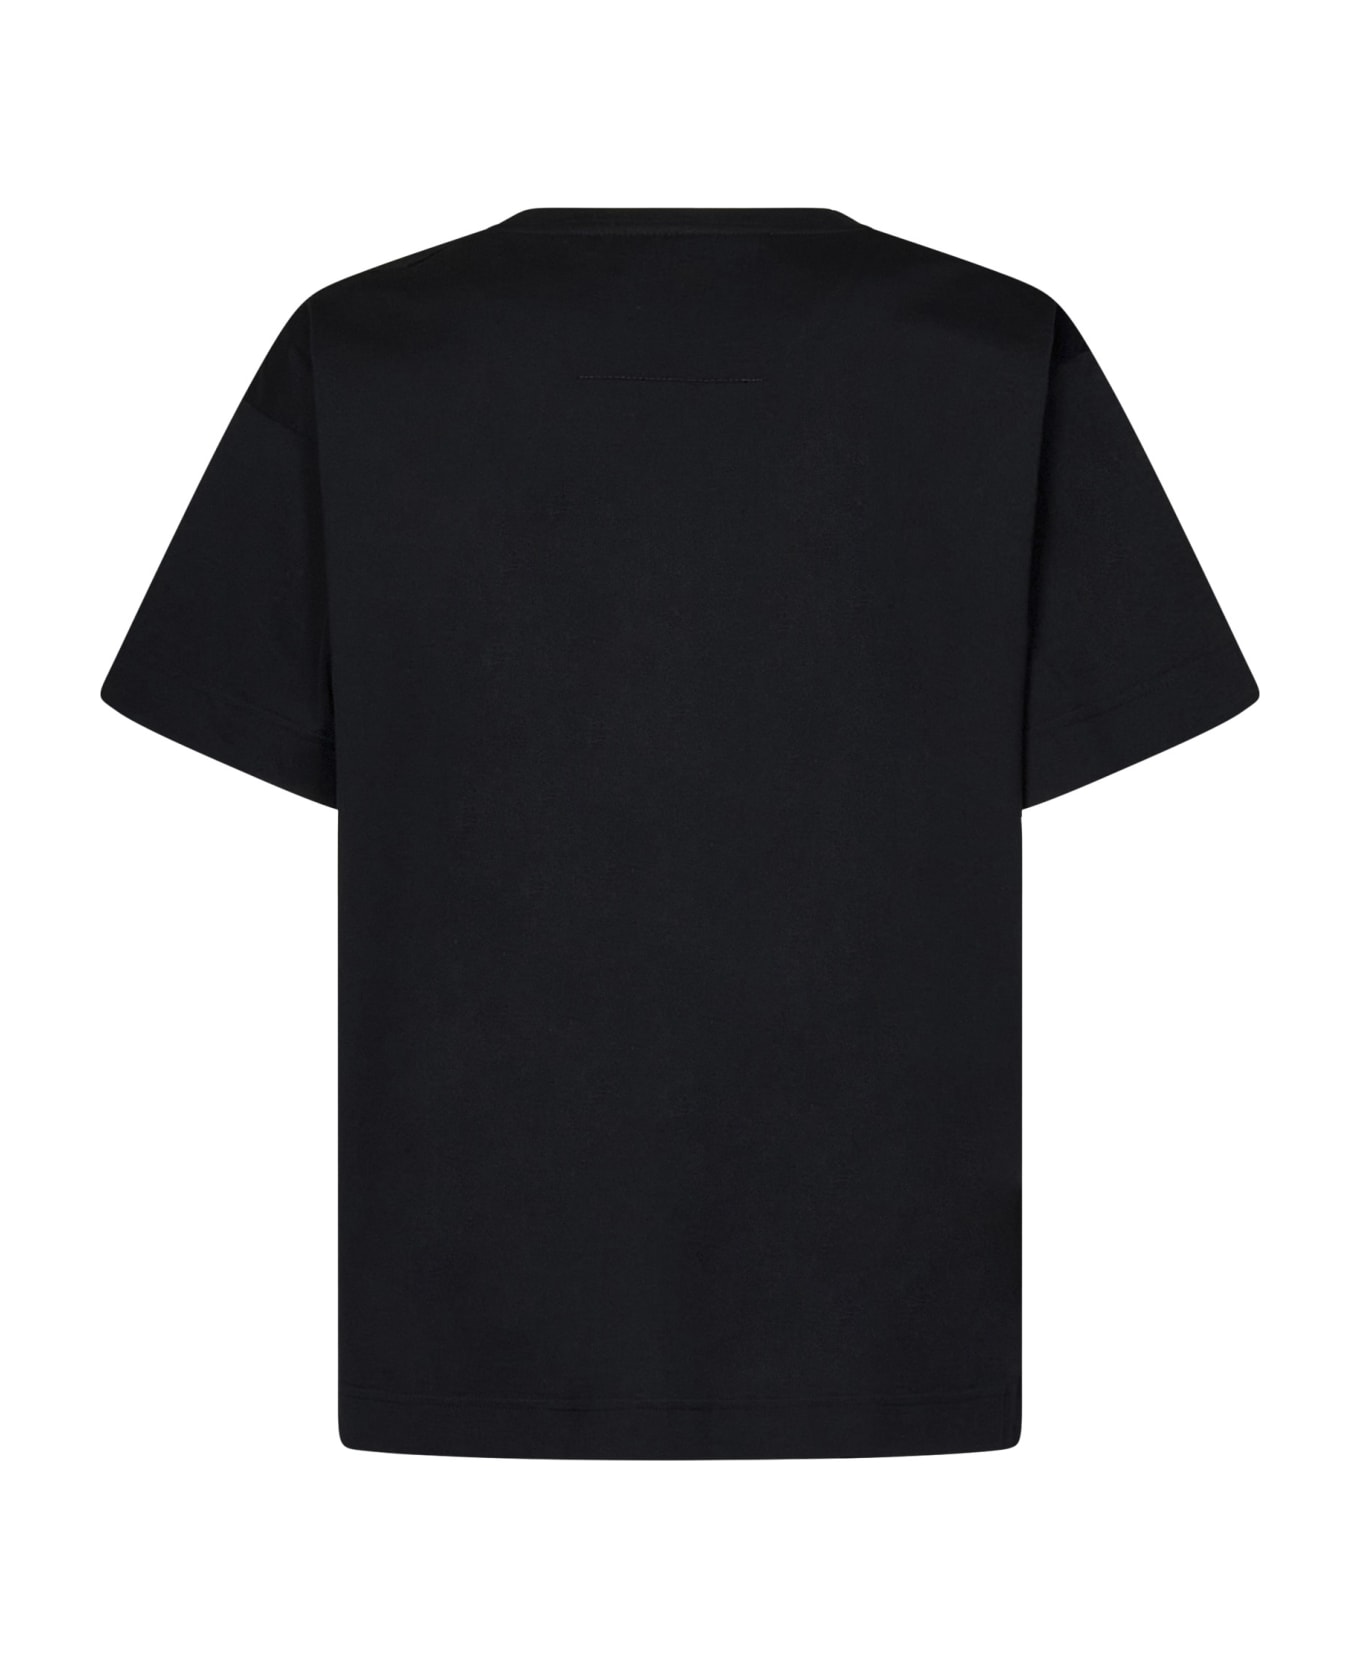 Givenchy 4g Stars T-shirt - Black